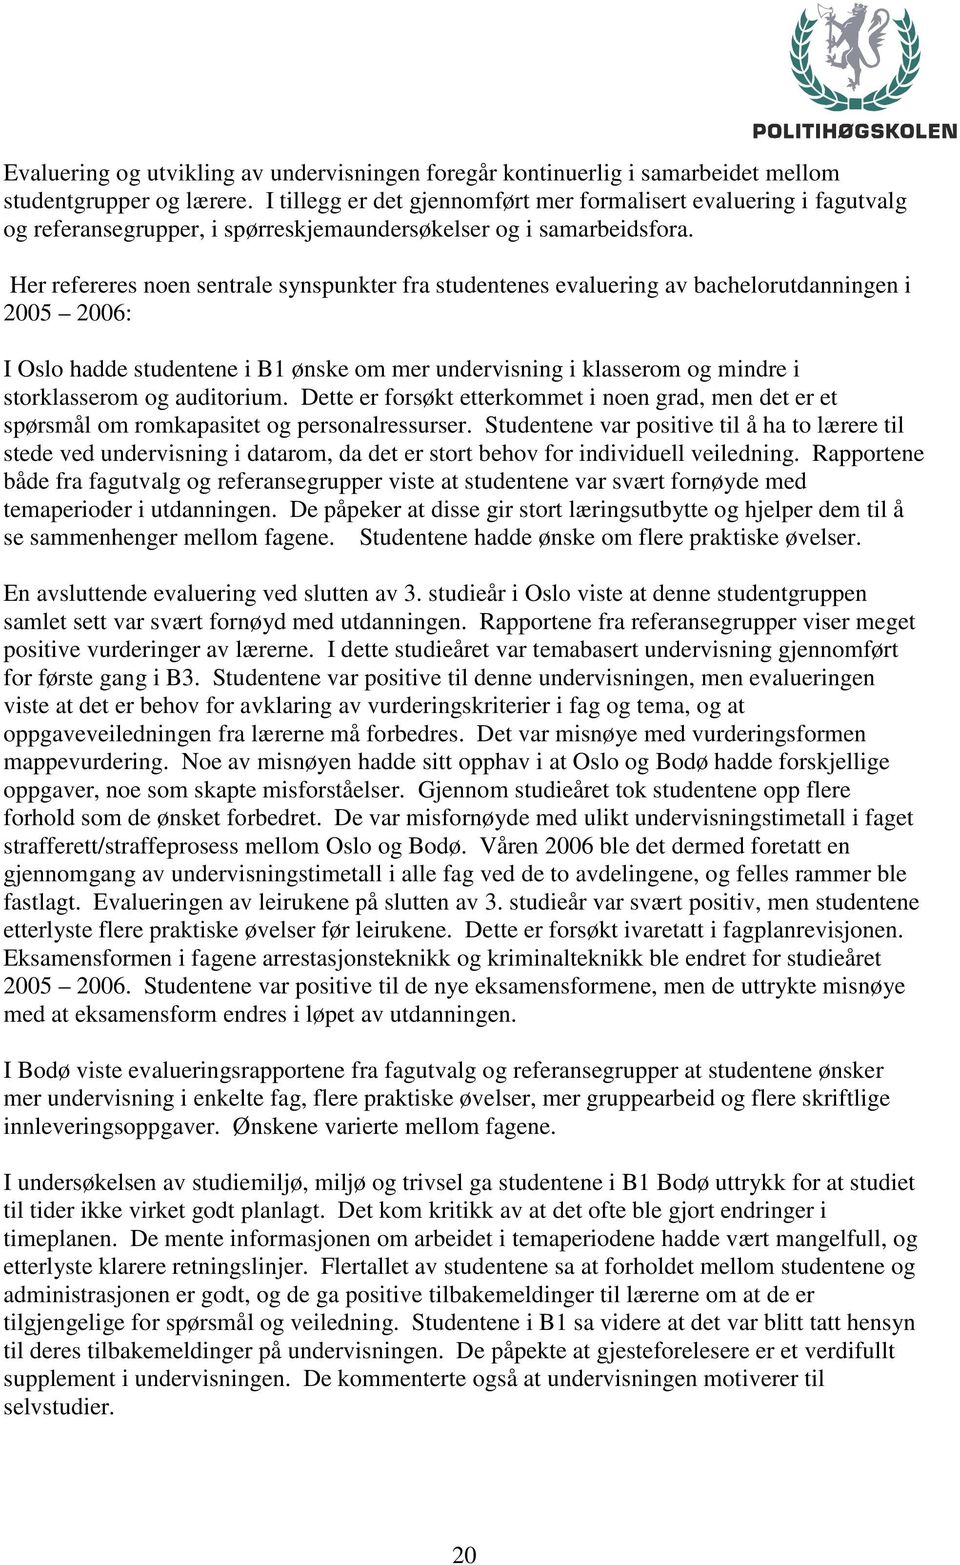 Her refereres noen sentrale synspunkter fra studentenes evaluering av bachelorutdanningen i 2005 2006: I Oslo hadde studentene i B1 ønske om mer undervisning i klasserom og mindre i storklasserom og